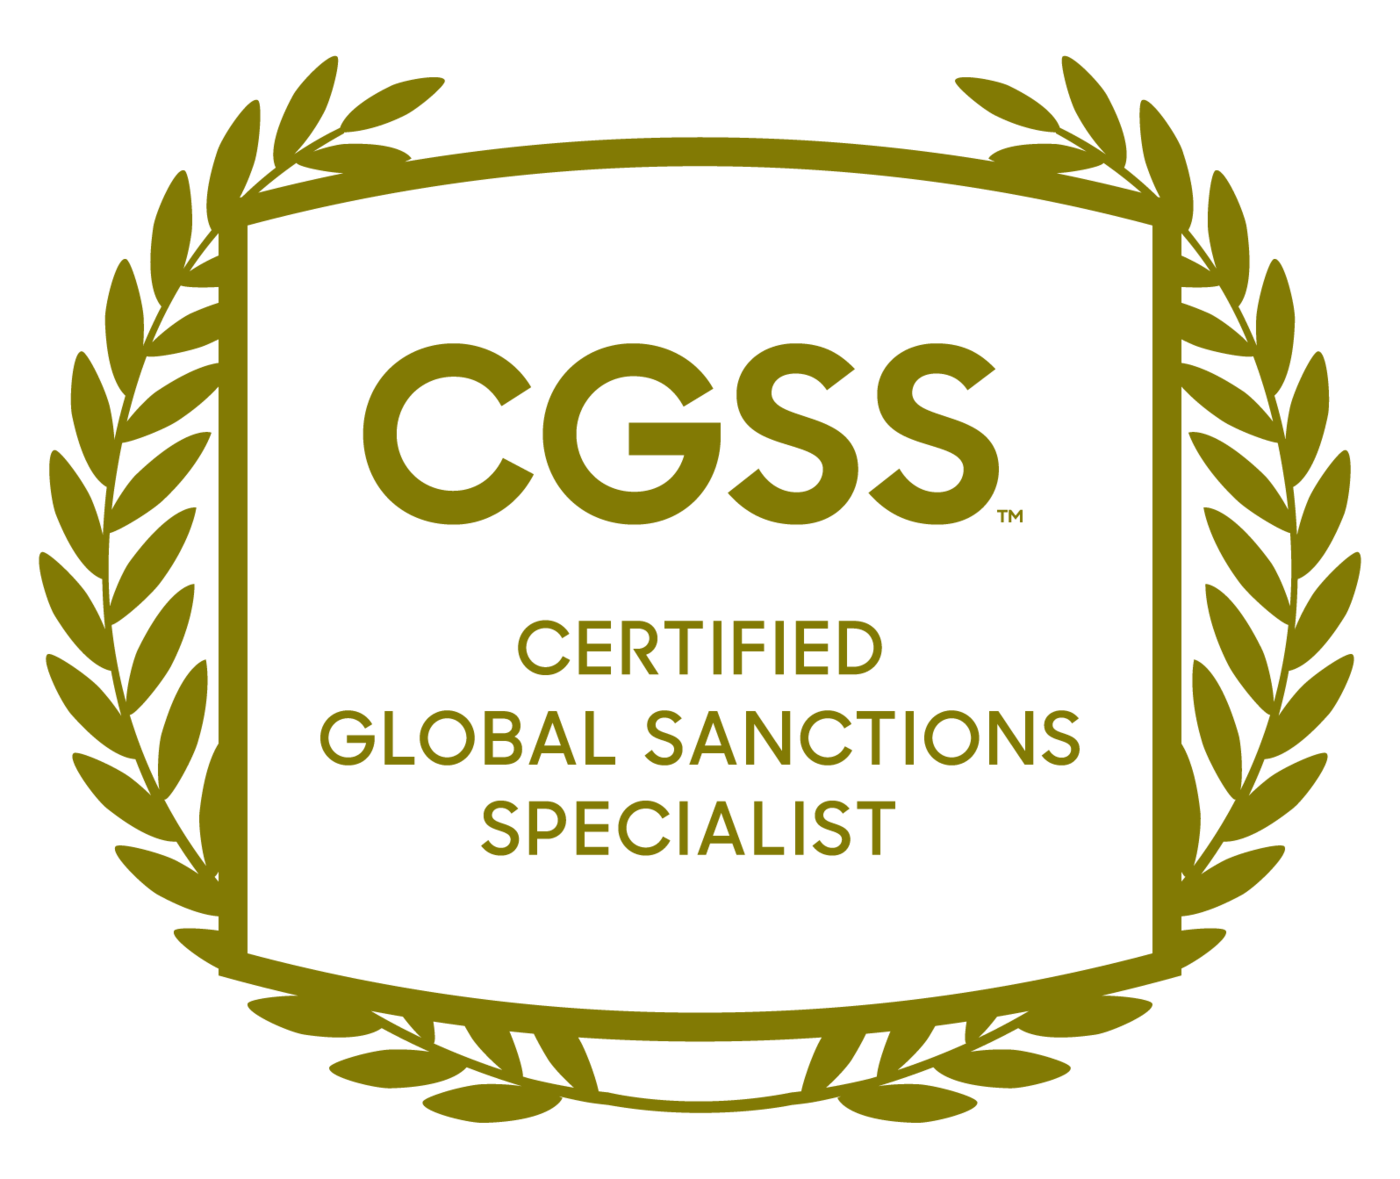 CGSS Crest